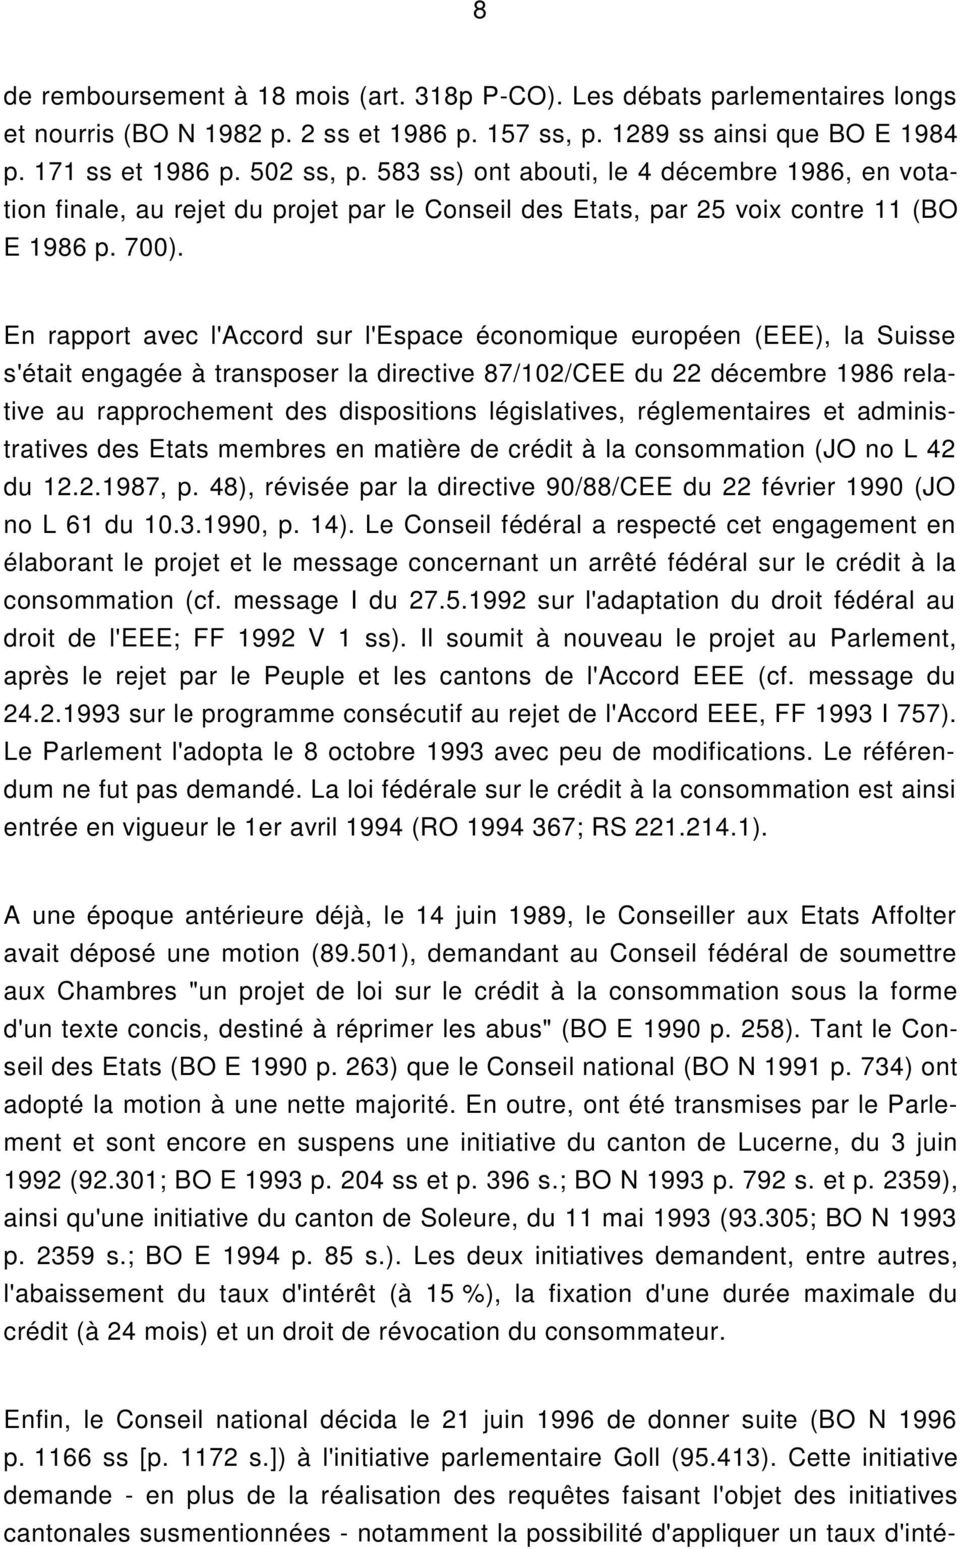 En rapport avec l'accord sur l'espace économique européen (EEE), la Suisse s'était engagée à transposer la directive 87/102/CEE du 22 décembre 1986 relative au rapprochement des dispositions